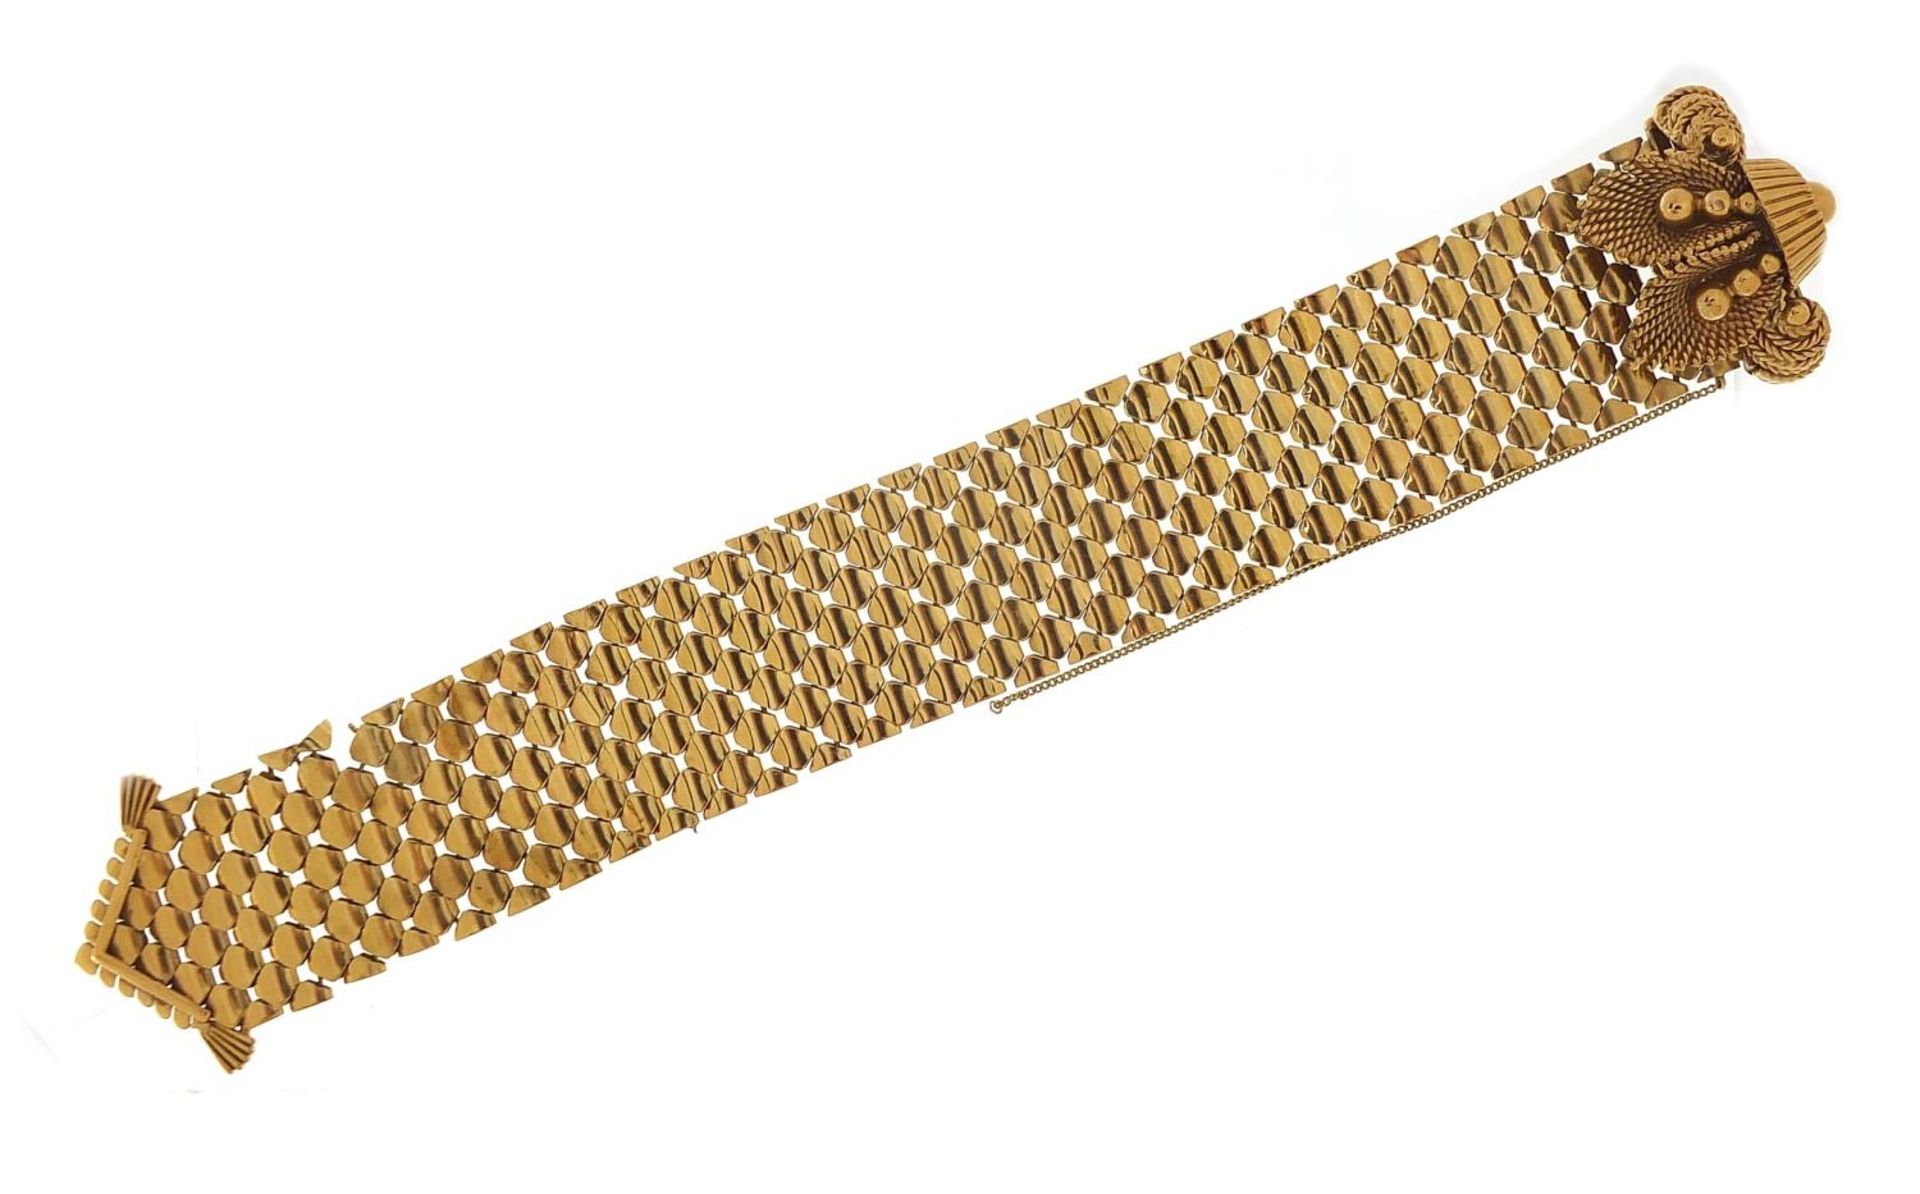 Large 9ct gold belt and buckle design bracelet with floral basket design clasp, S & SLD maker's - Image 3 of 5